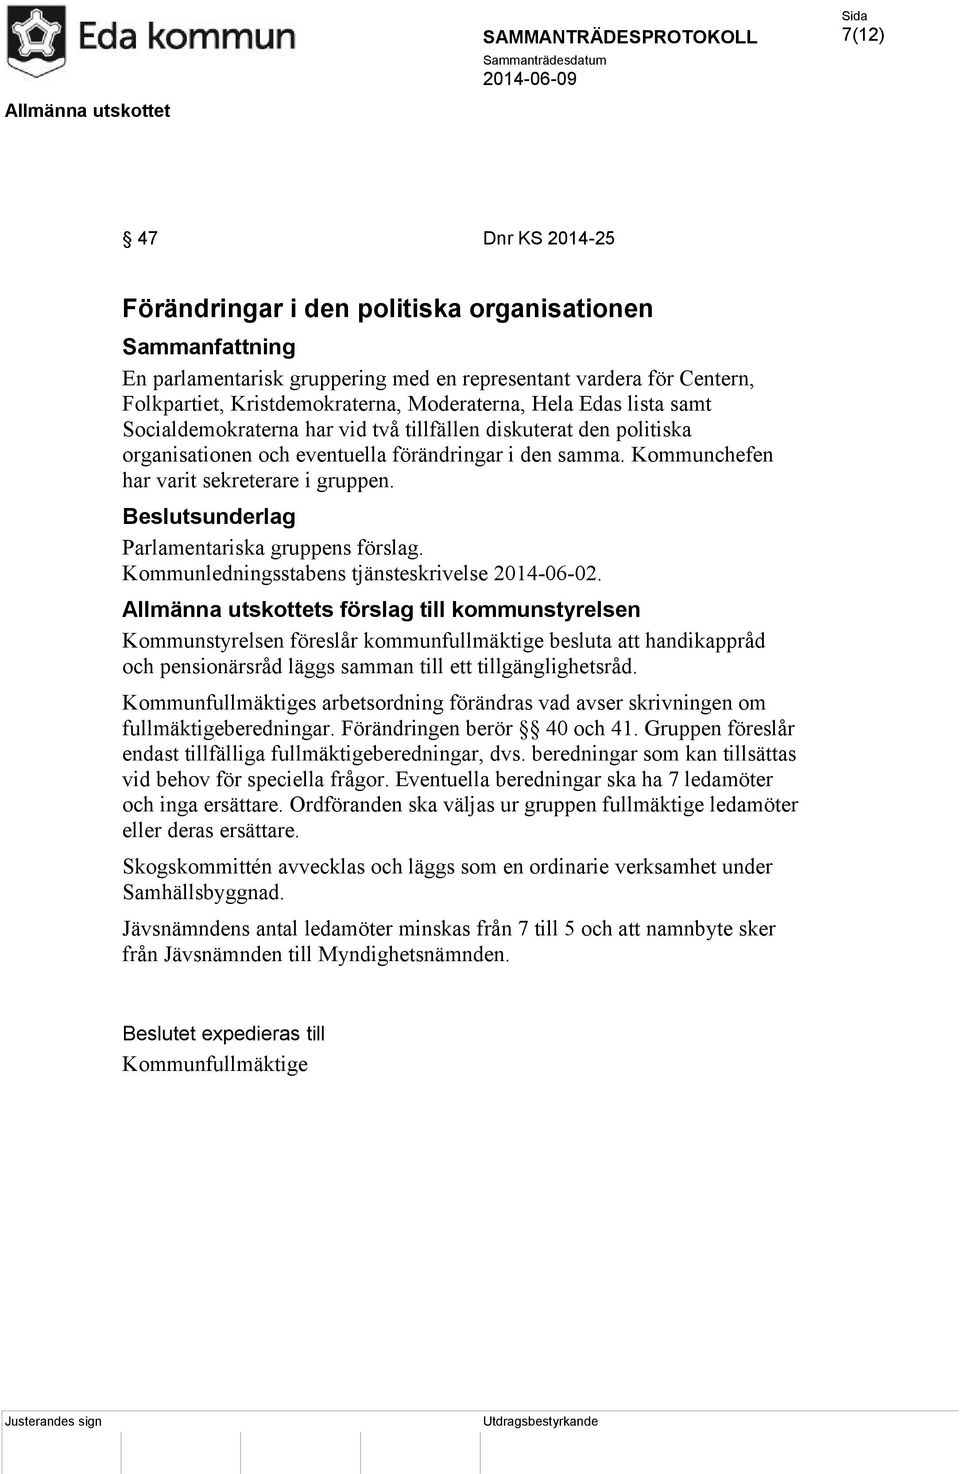 Parlamentariska gruppens förslag. Kommunledningsstabens tjänsteskrivelse 2014-06-02.